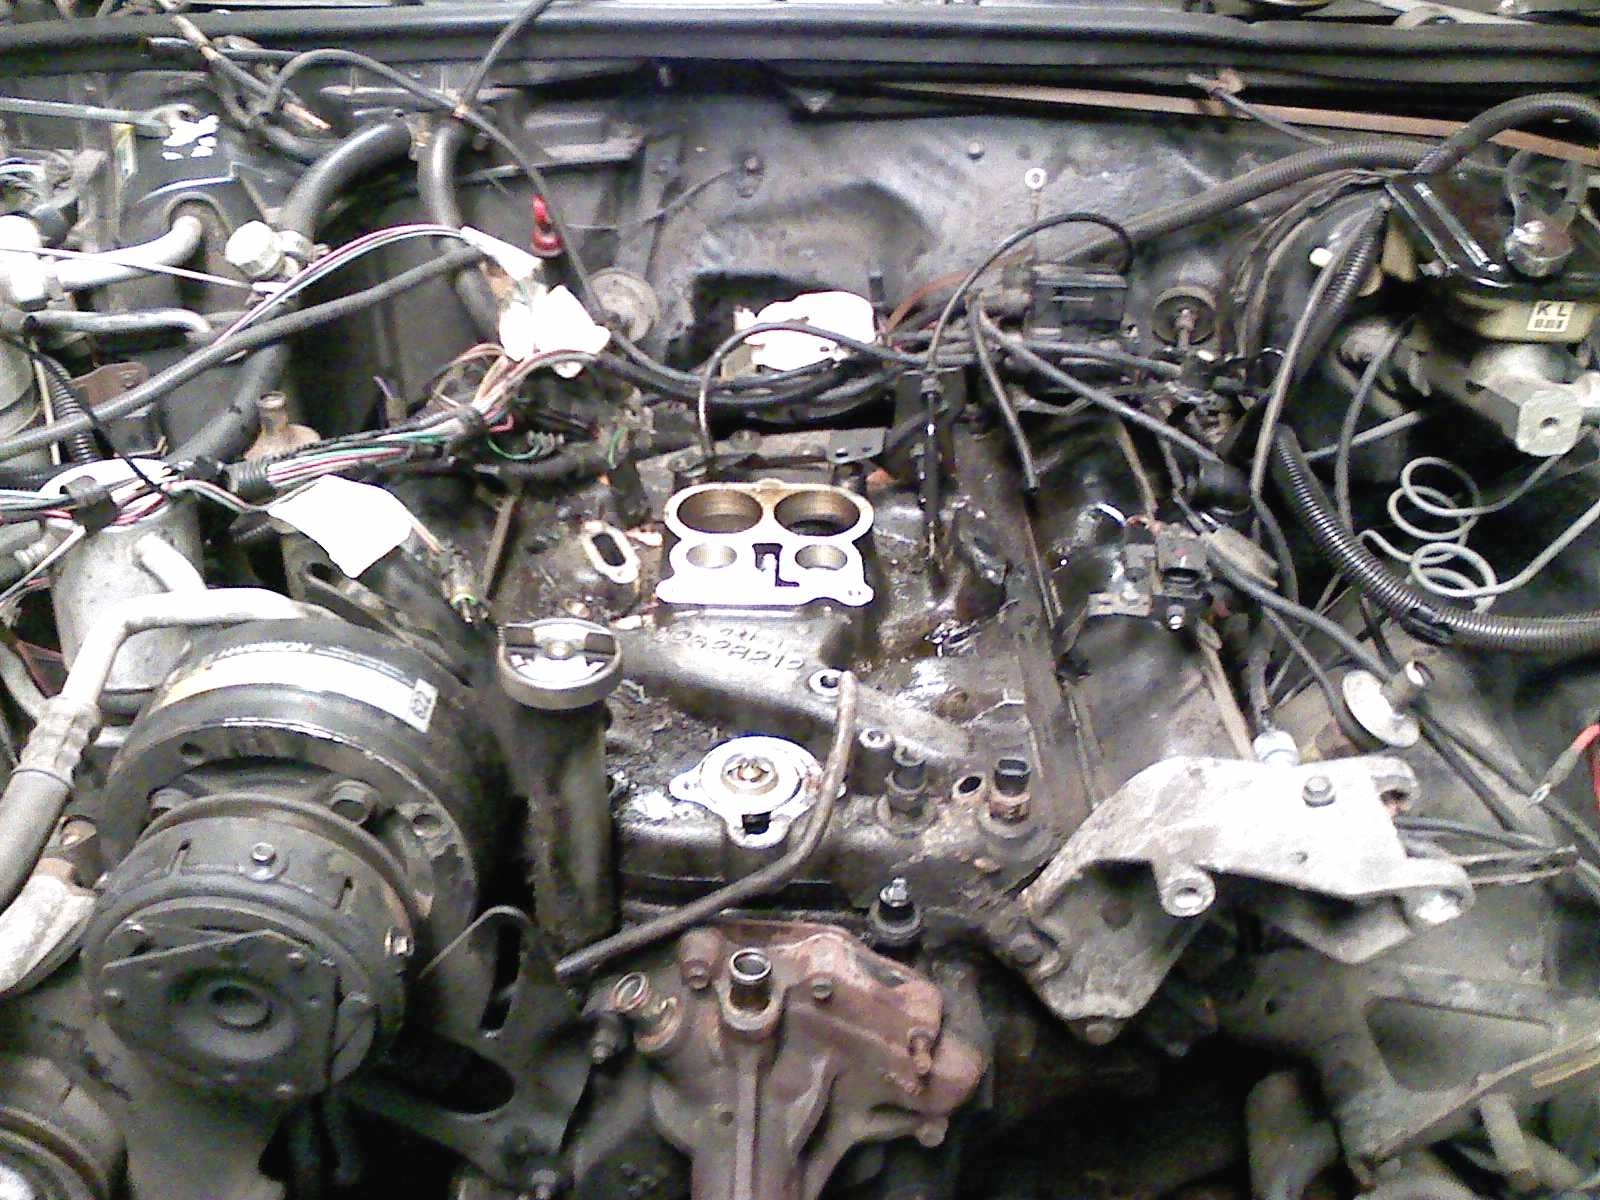 Oldsmobile 307 Engine Diagram 307 Oldsmobile Engine Diagram to Her with 1984 Oldsmobile 307 Of Oldsmobile 307 Engine Diagram